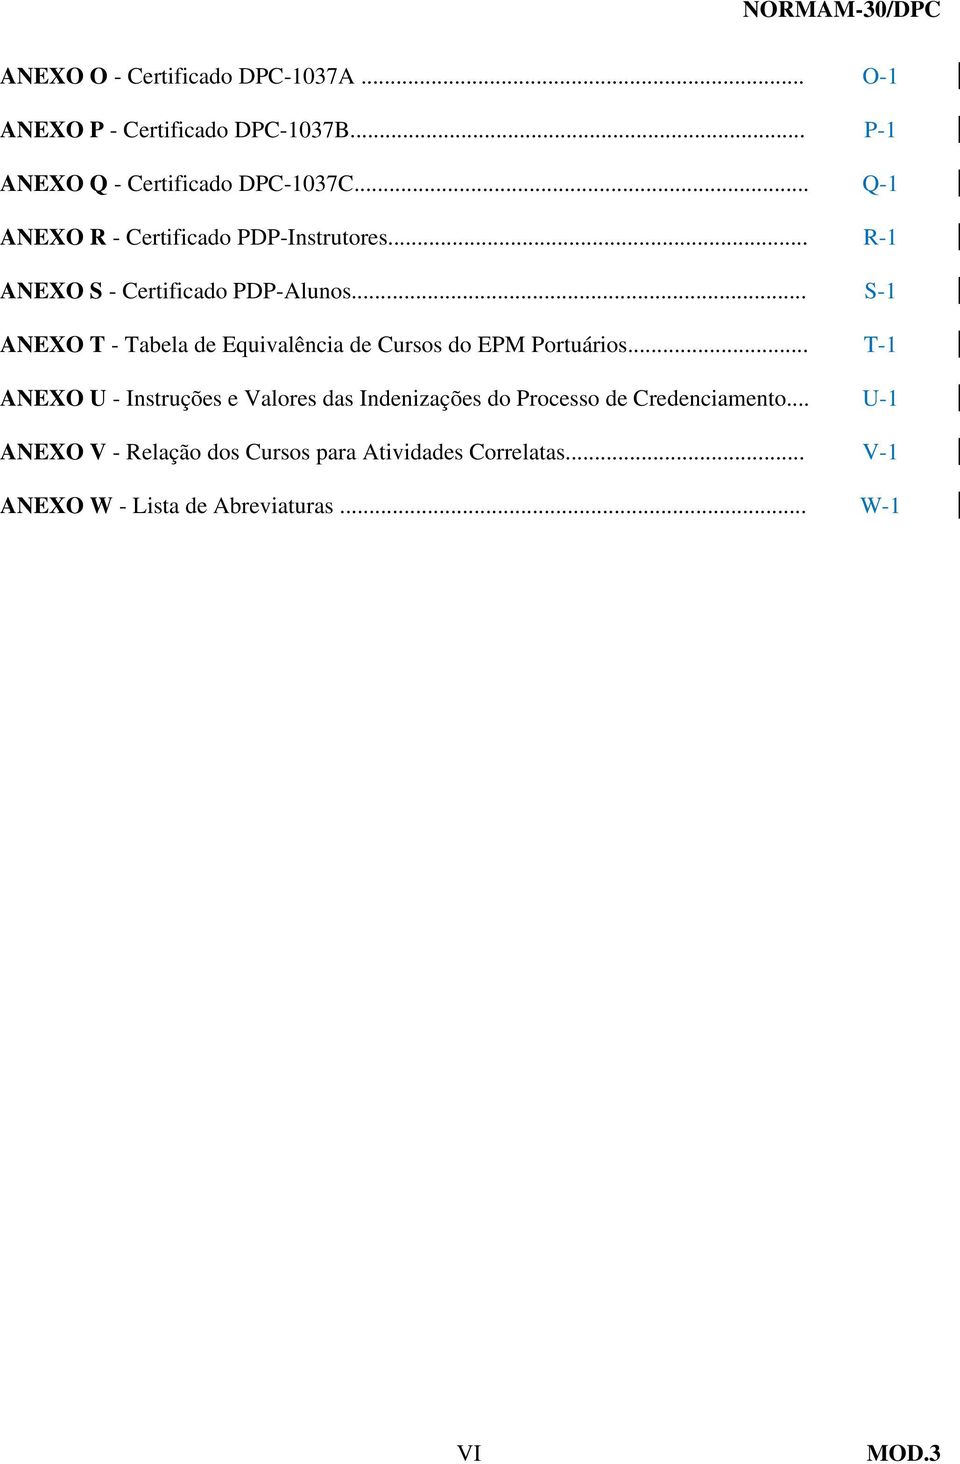 .. S-1 ANEXO T - Tabela de Equivalência de Cursos do EPM Portuários.